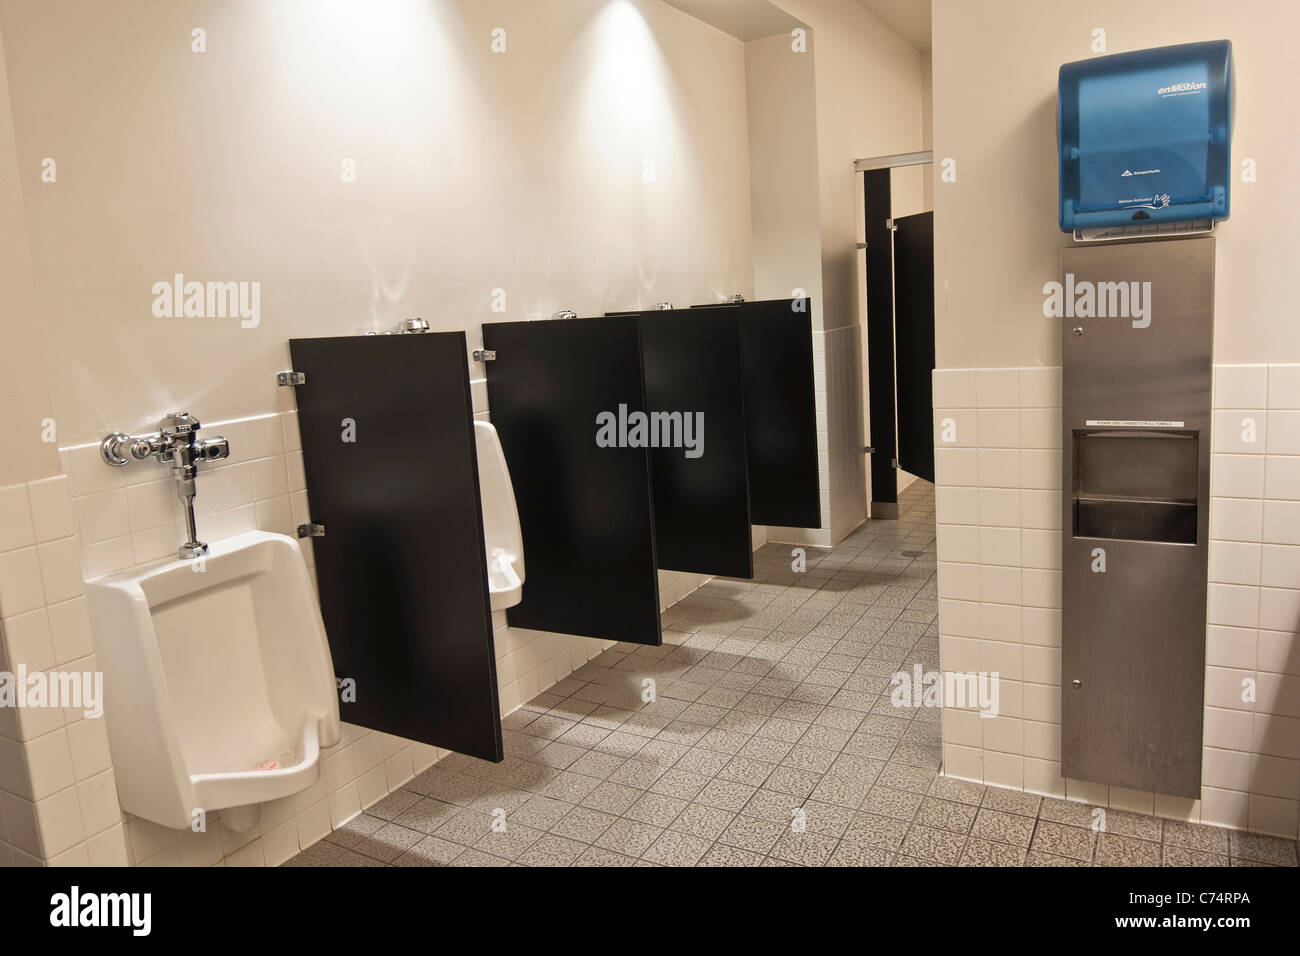 Eine typische öffentliche Toilette. Stockfoto